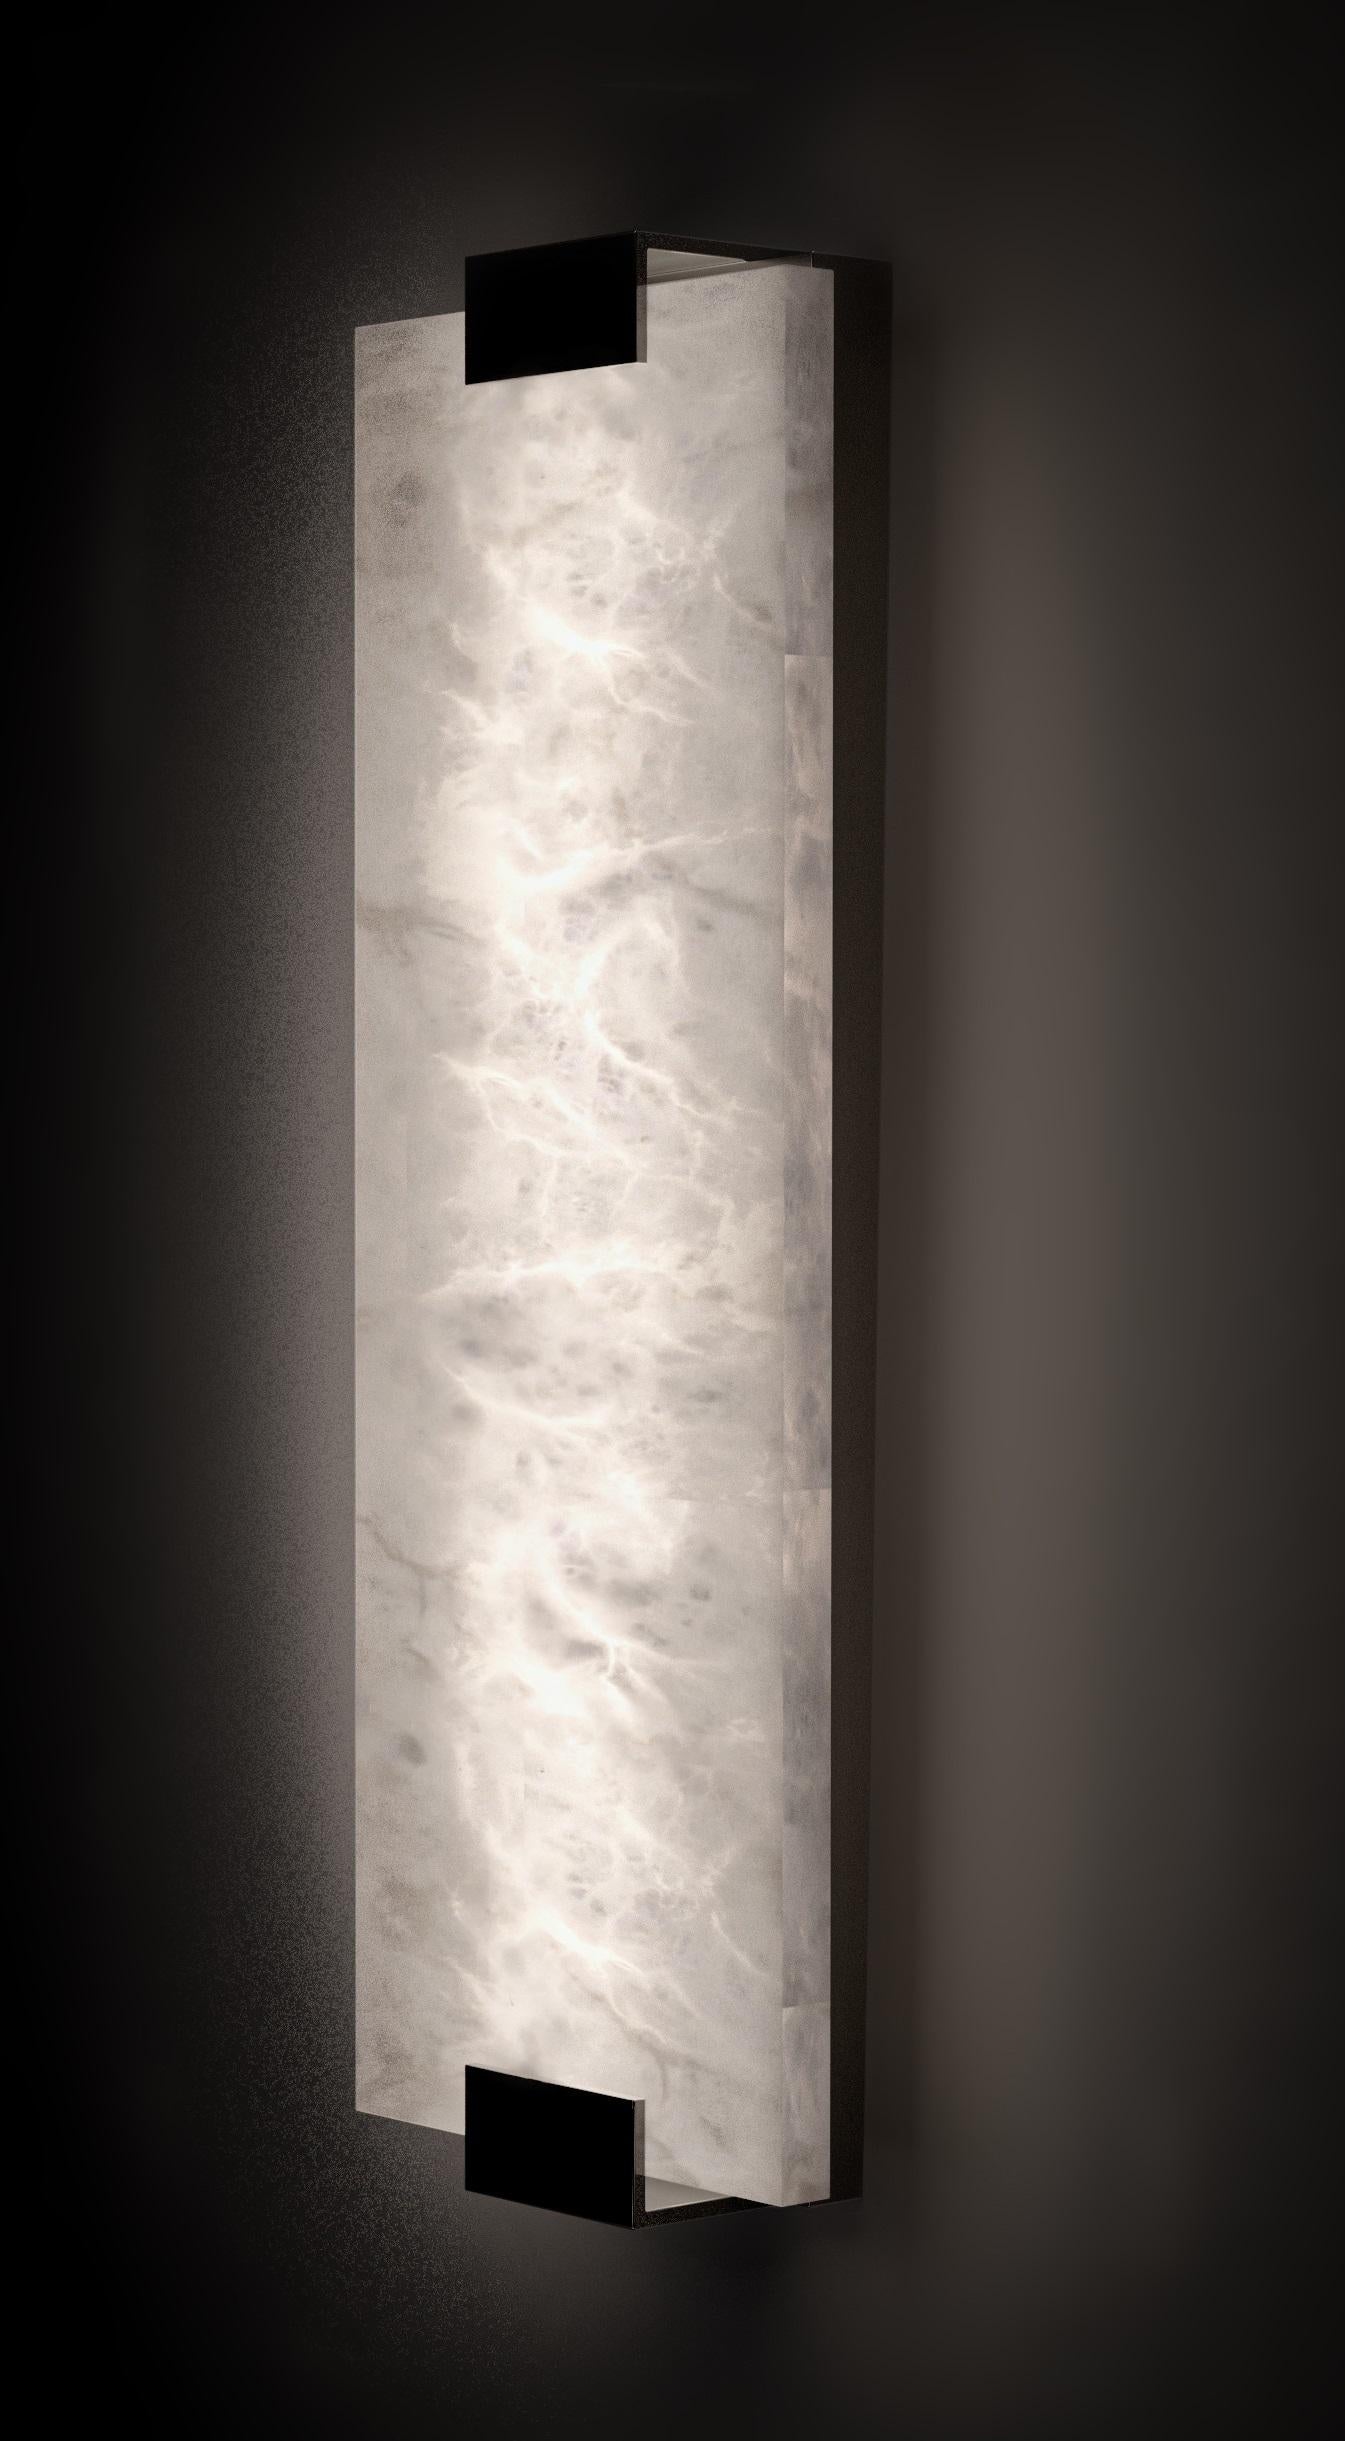 Kinkairo Medium glänzende schwarze Applique von Alabastro Italiano
Abmessungen: Ø 20 x H 60 cm.
MATERIALIEN: Weißer Alabaster und schwarz glänzendes Metall.

Erhältlich in verschiedenen Ausführungen: Silber glänzend, Bronze, Messing gebürstet,